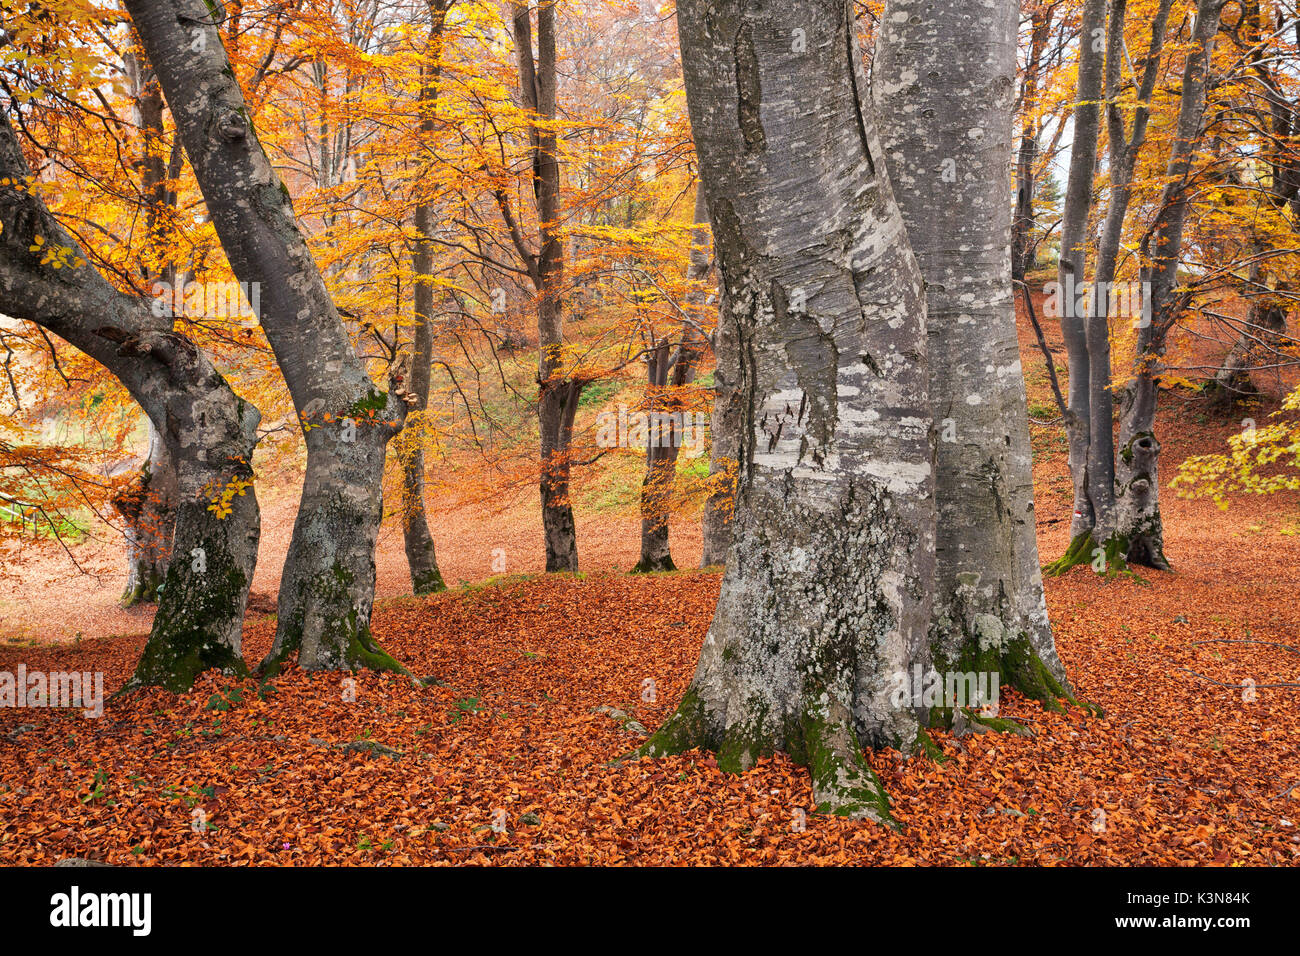 Magasa, Valvestino, Lombardy, Italy. Beeches in autumn. Stock Photo